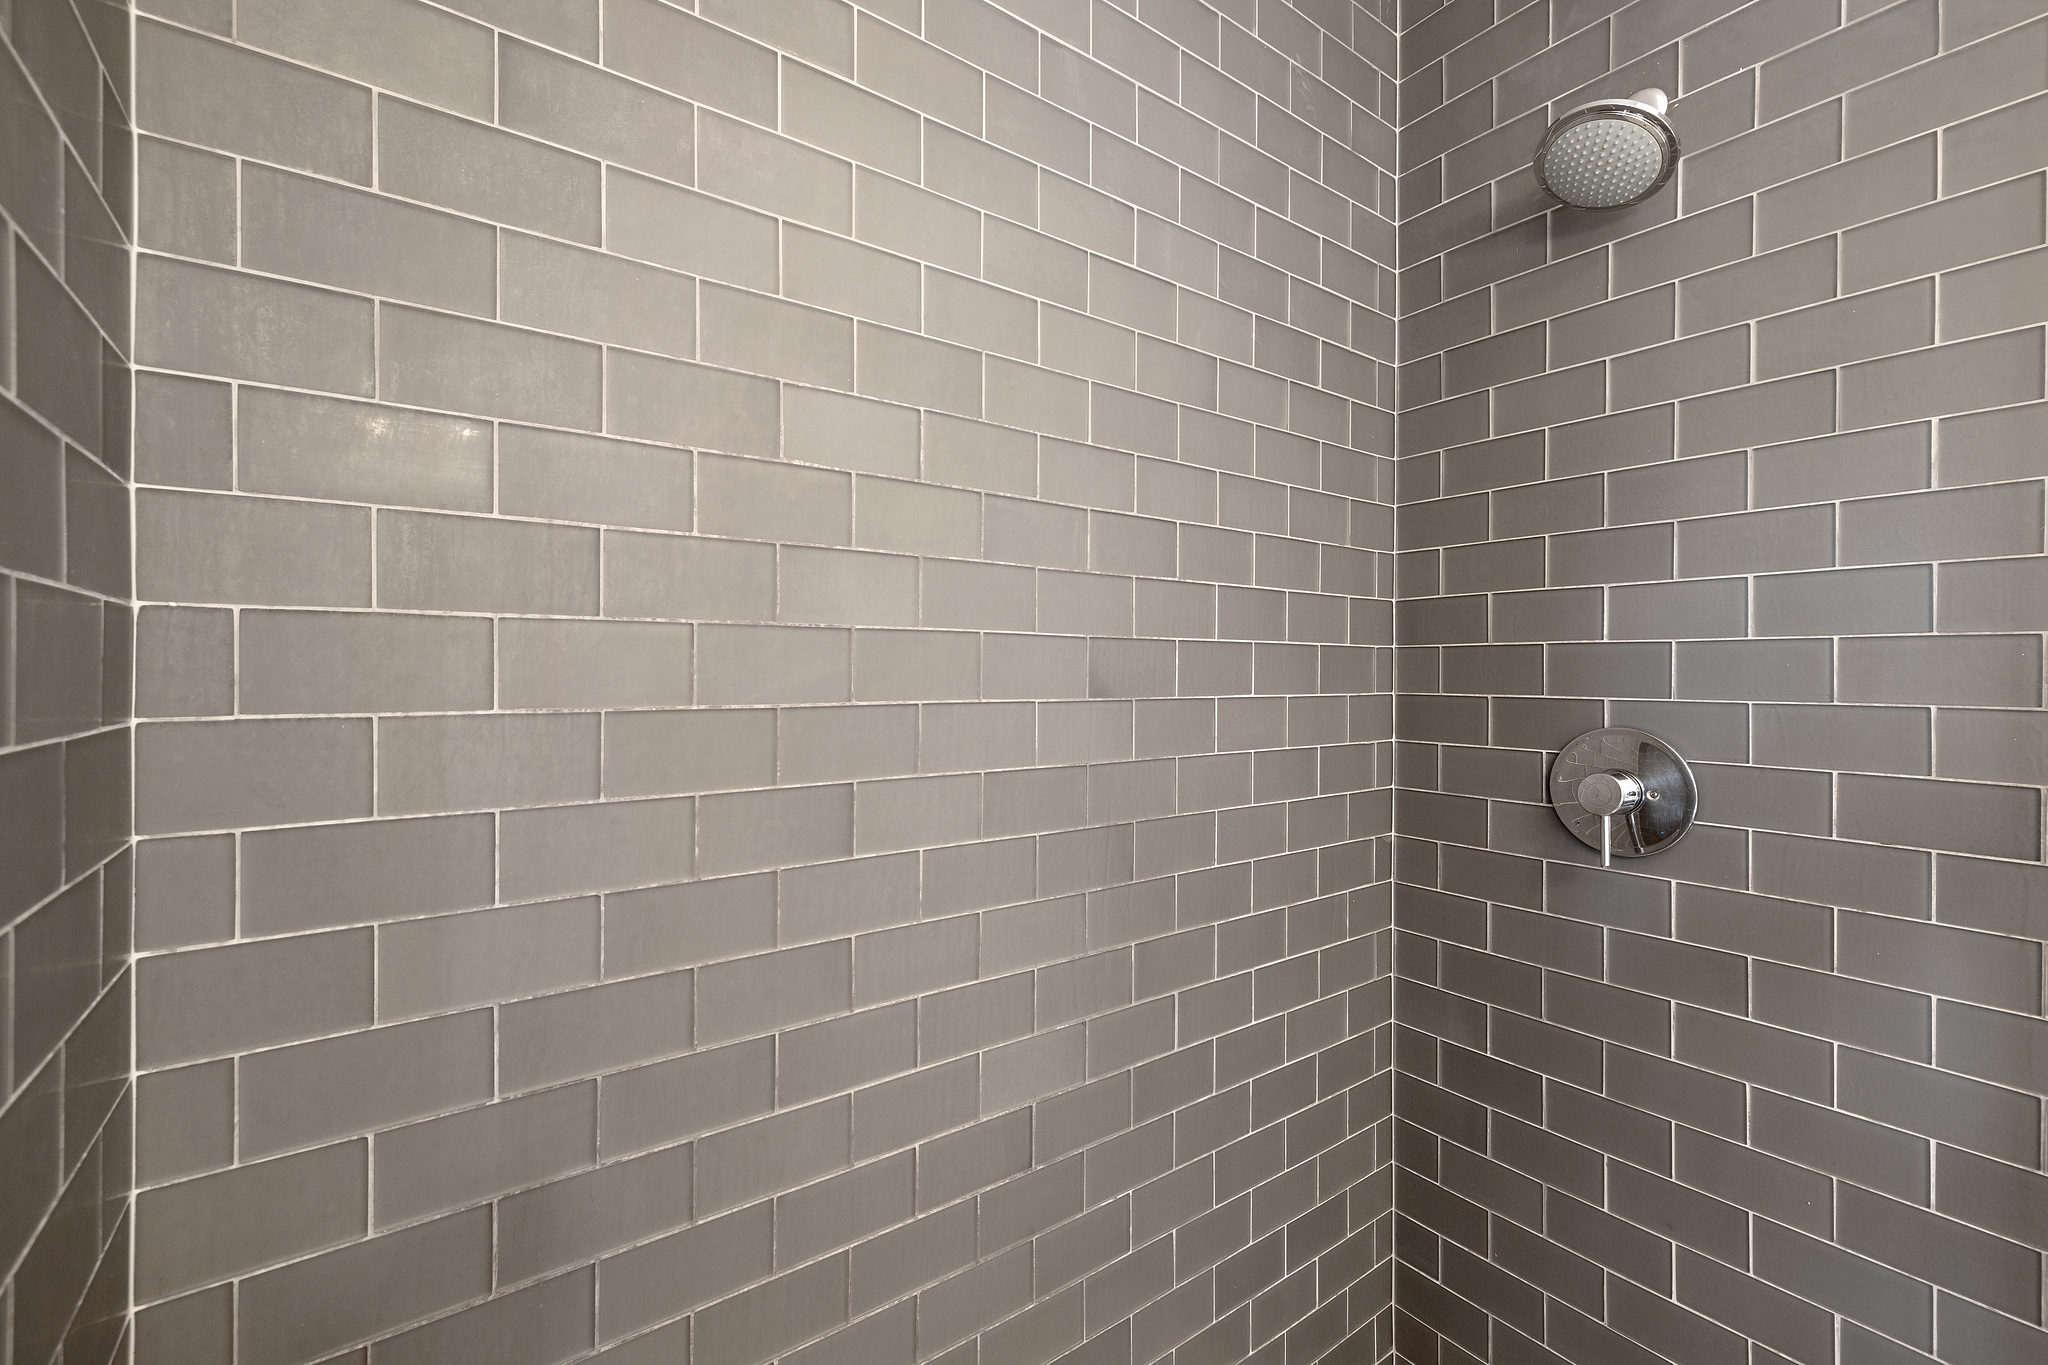 Tiled Shower Real Estate